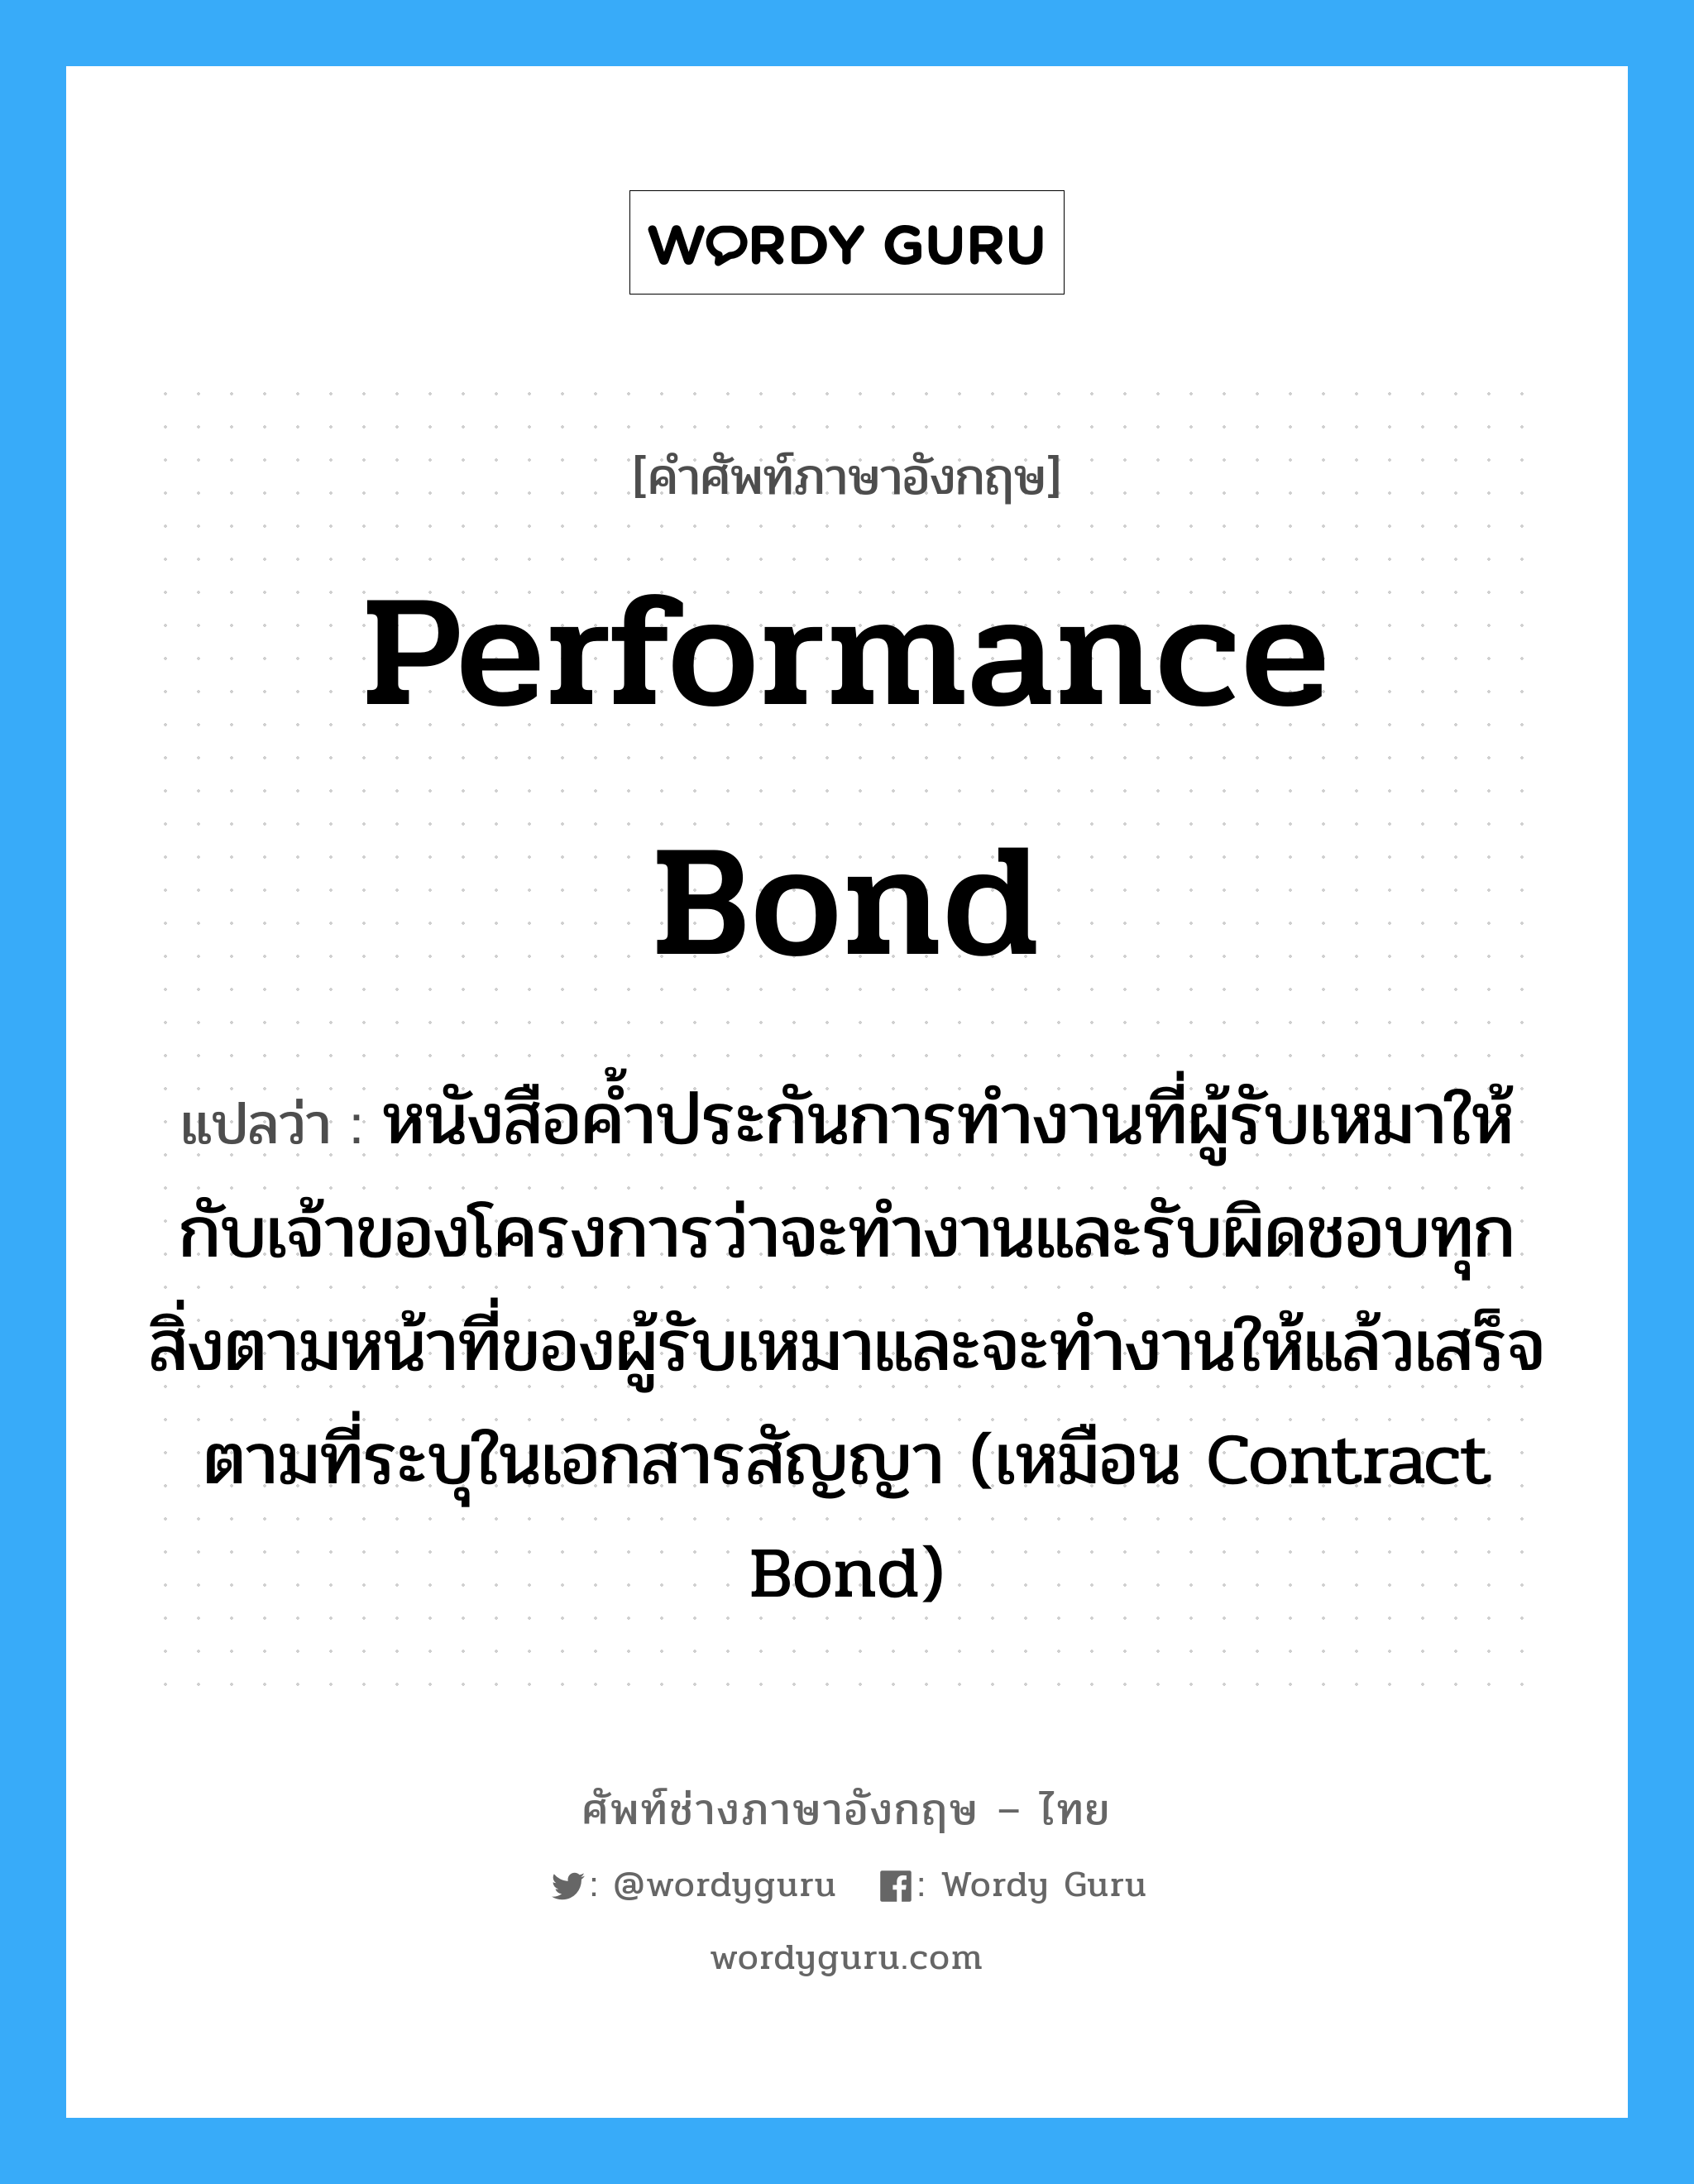 Performance Bond แปลว่า?, คำศัพท์ช่างภาษาอังกฤษ - ไทย Performance Bond คำศัพท์ภาษาอังกฤษ Performance Bond แปลว่า หนังสือค้ำประกันการทำงานที่ผู้รับเหมาให้กับเจ้าของโครงการว่าจะทำงานและรับผิดชอบทุกสิ่งตามหน้าที่ของผู้รับเหมาและจะทำงานให้แล้วเสร็จตามที่ระบุในเอกสารสัญญา (เหมือน Contract Bond)